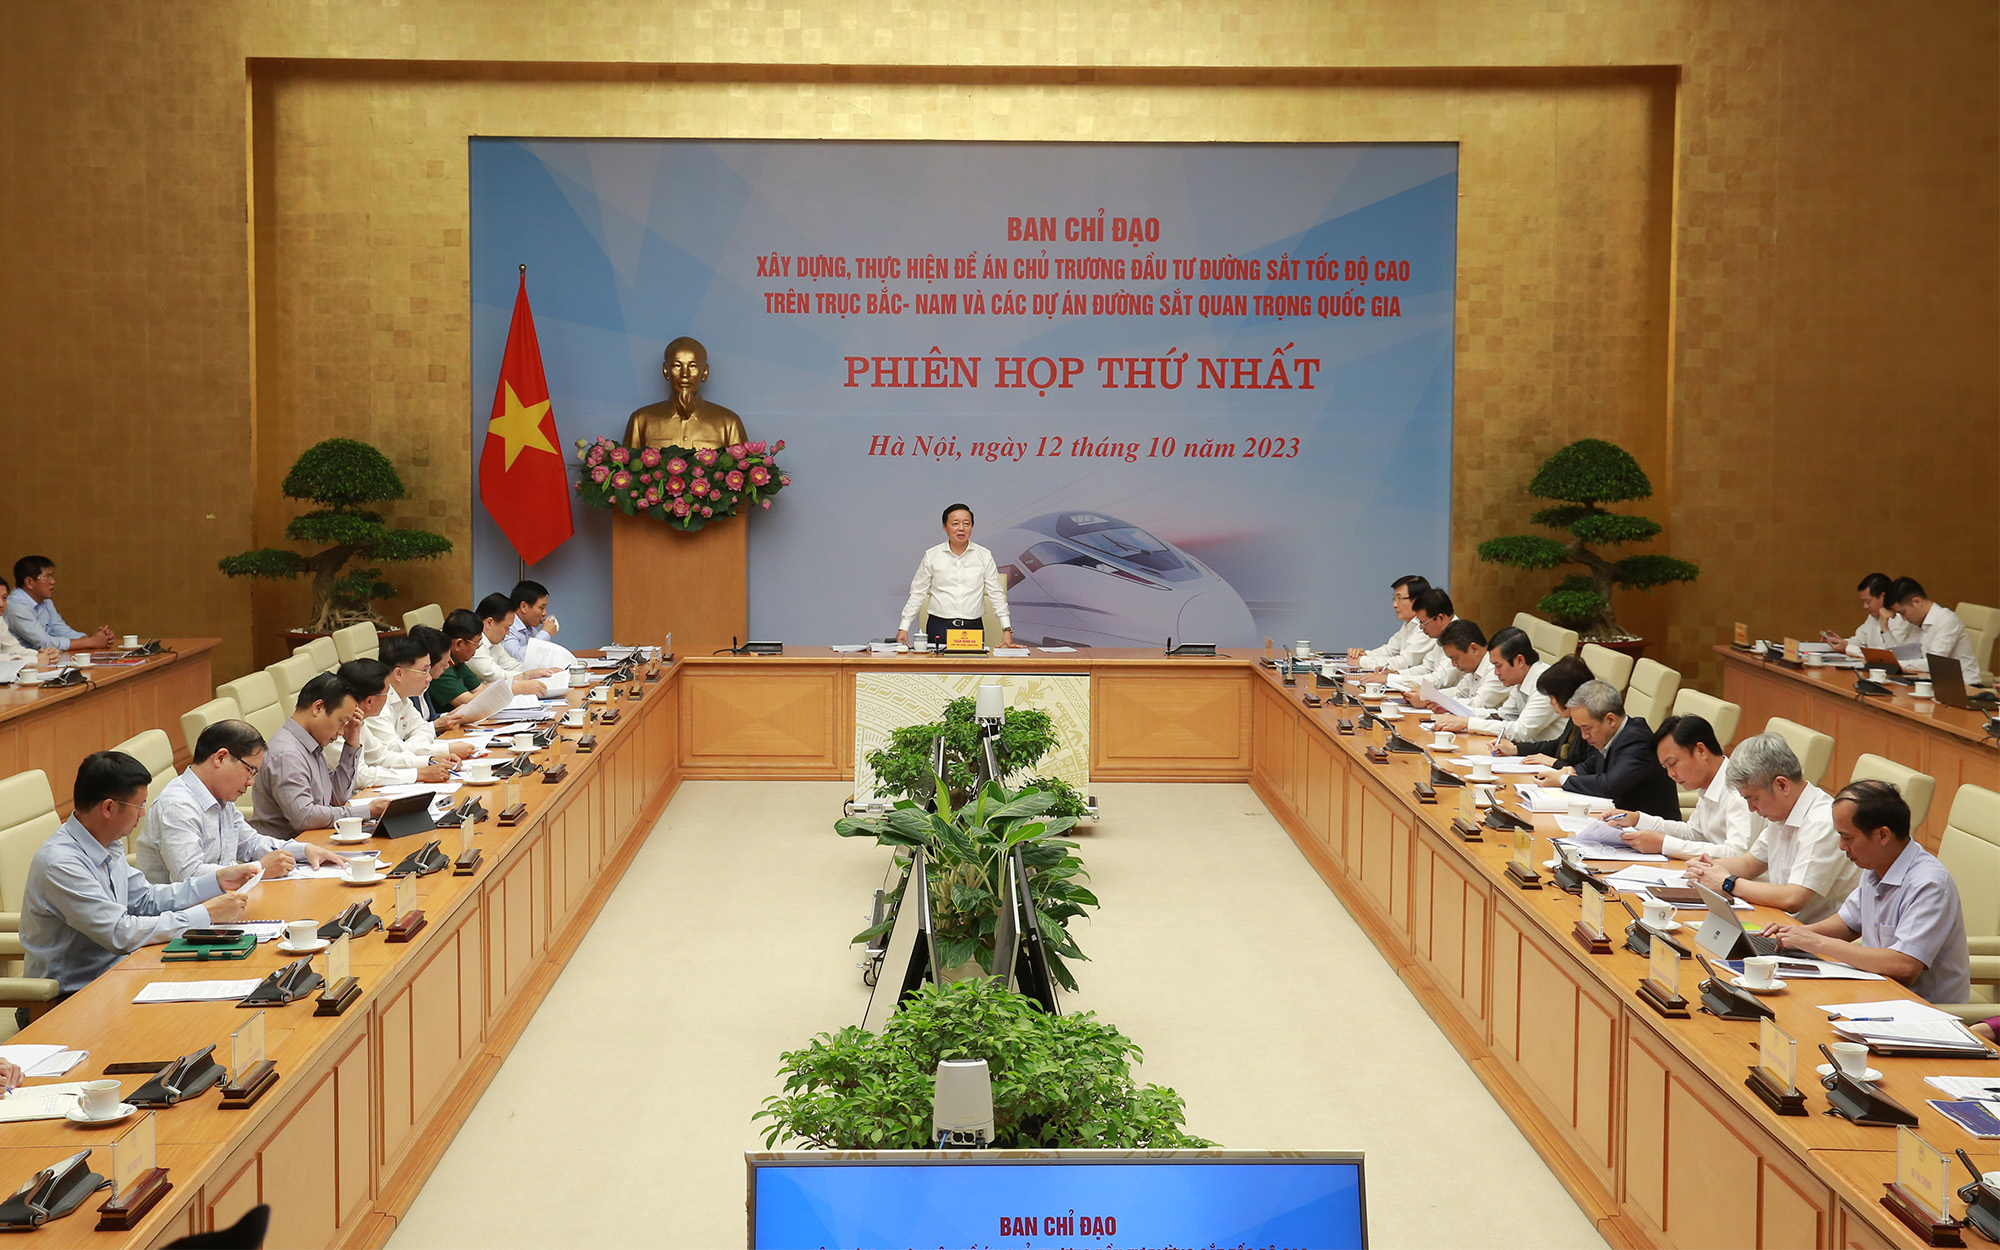 Phó Thủ tướng Trần Hồng Hà, Trưởng Ban Chỉ đạo xây dựng, thực hiện Đề án chủ trương đầu tư đường sắt tốc độ cao trên trục Bắc - Nam và các dự án đường sắt quan trọng quốc gia chủ trì phiên họp thứ nhất của Ban Chỉ đạo - Ảnh: VGP/Minh Khôi